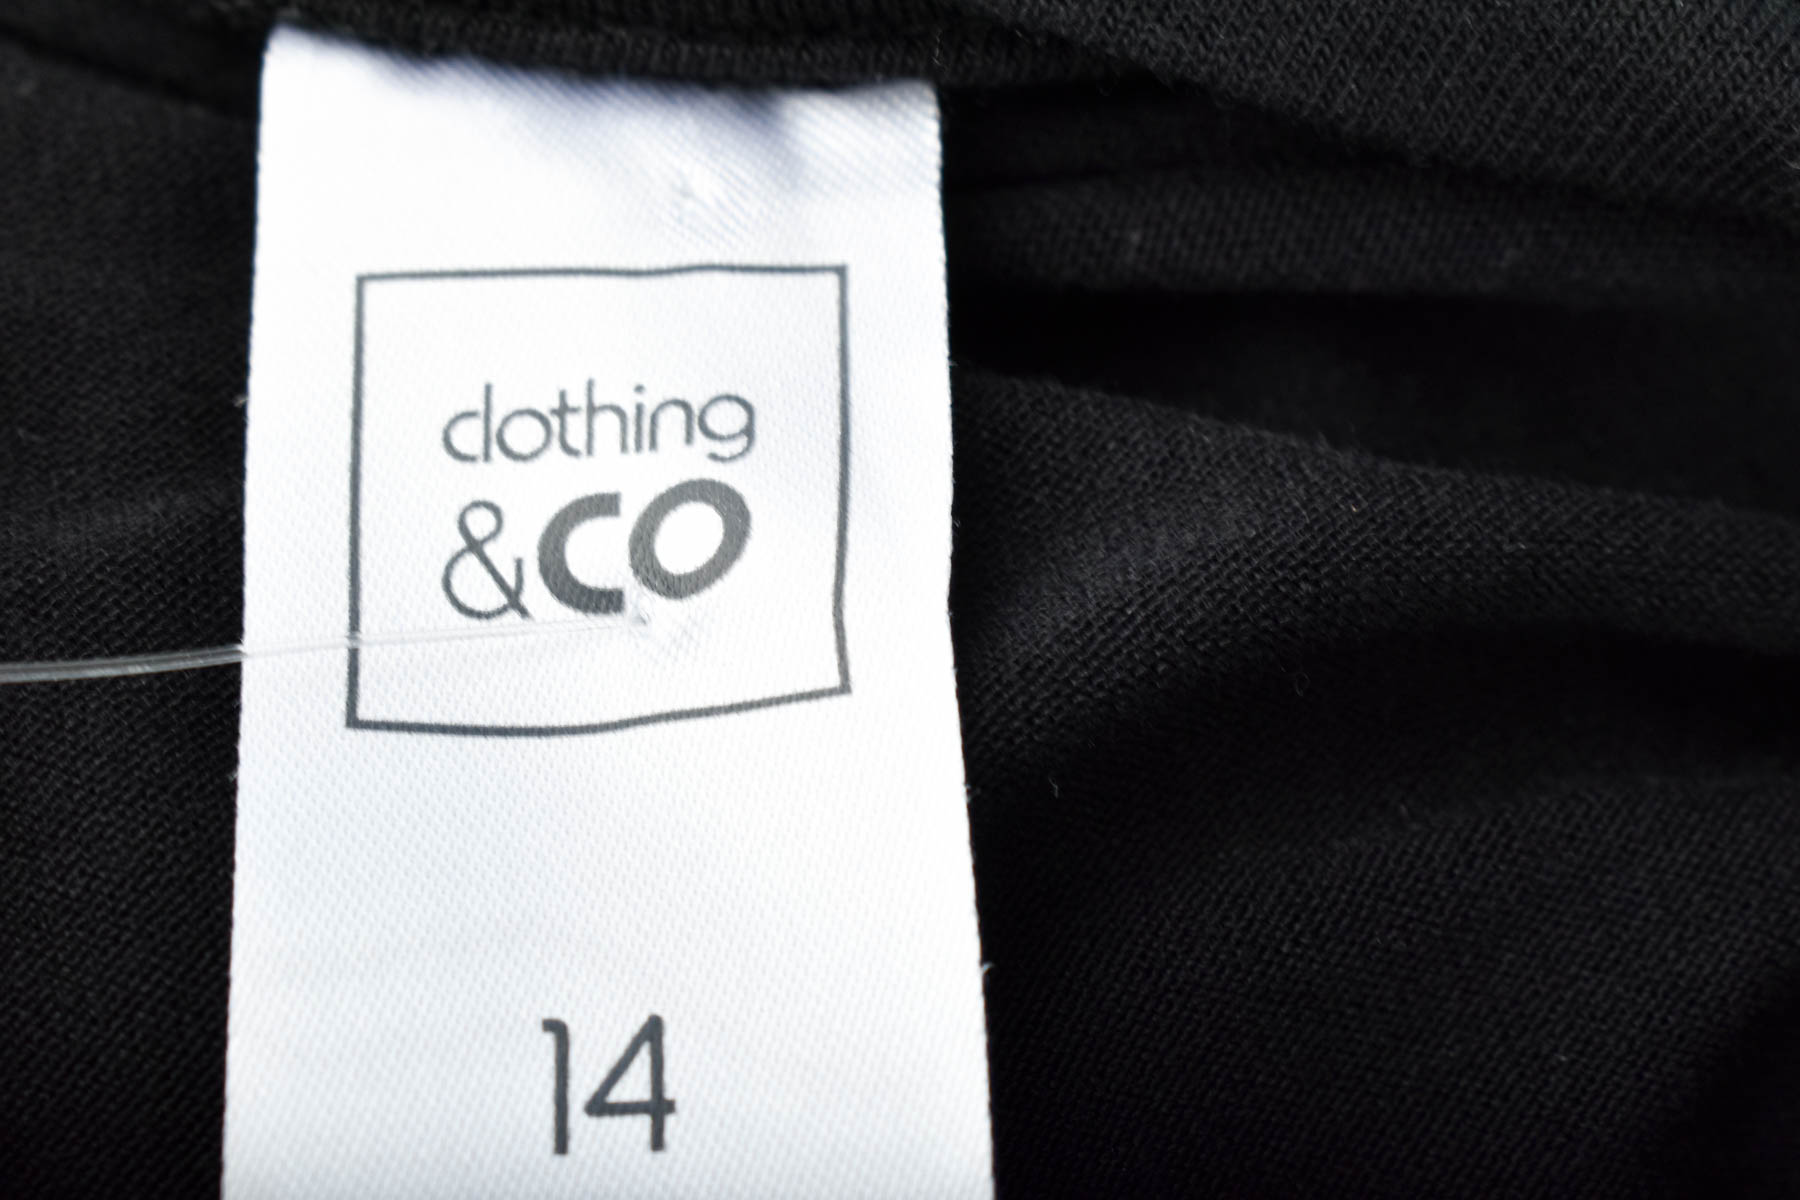 Koszulka damska - Clothing & CO - 2